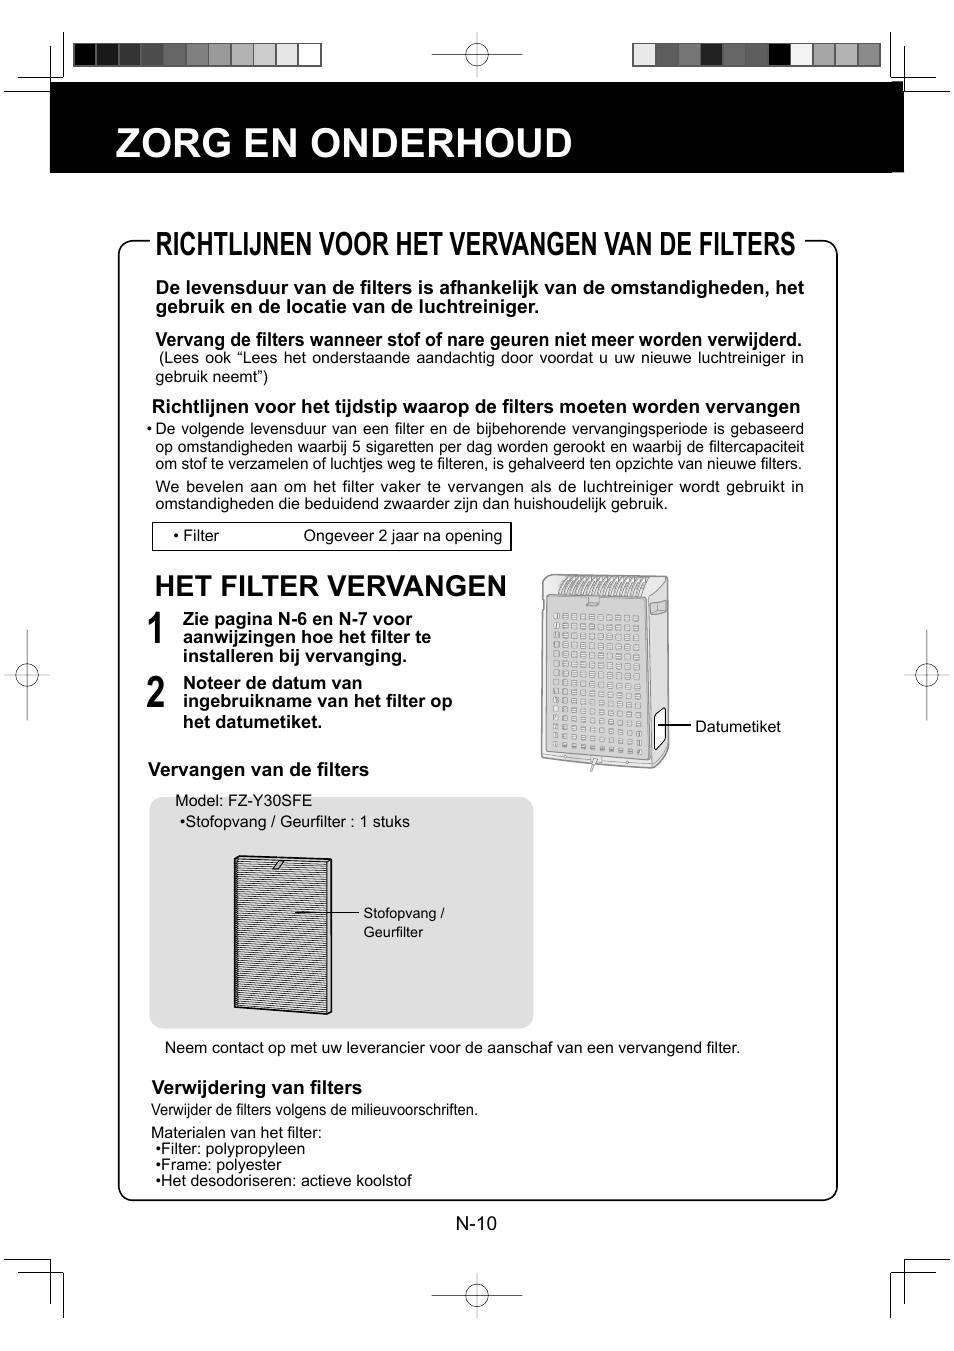 Zorg en onderhoud, Richtlijnen voor het vervangen van de filters, Het filter vervangen | Sharp FU-Y30EU User Manual | Page 54 / 113